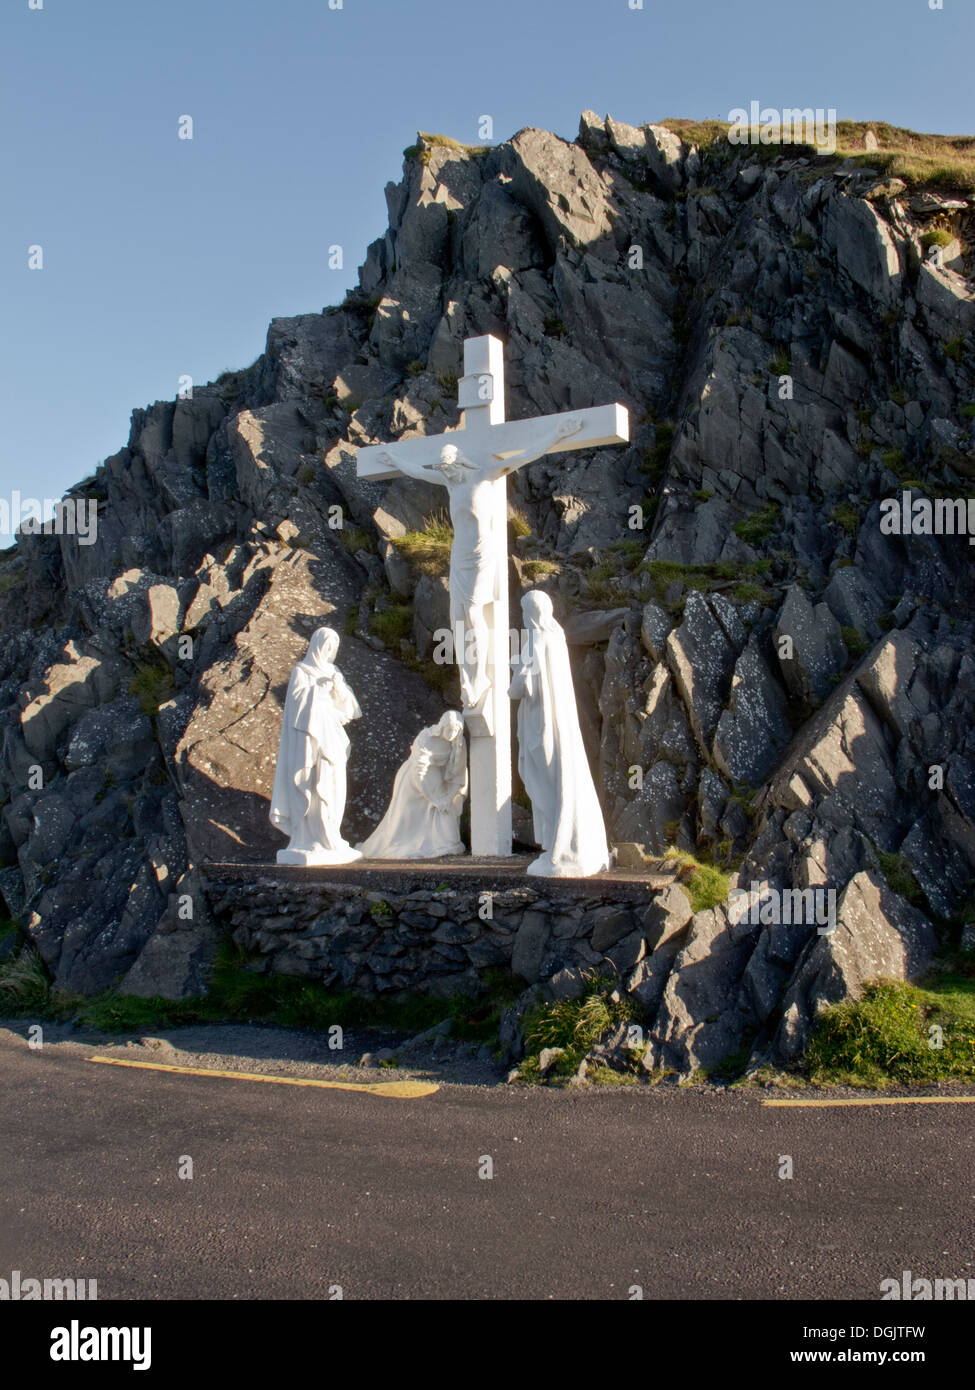 Statua del Crocifisso e la Vergine Maria sulla testa Slea unità della penisola di Dingle Co. Kerry Irlanda Foto Stock